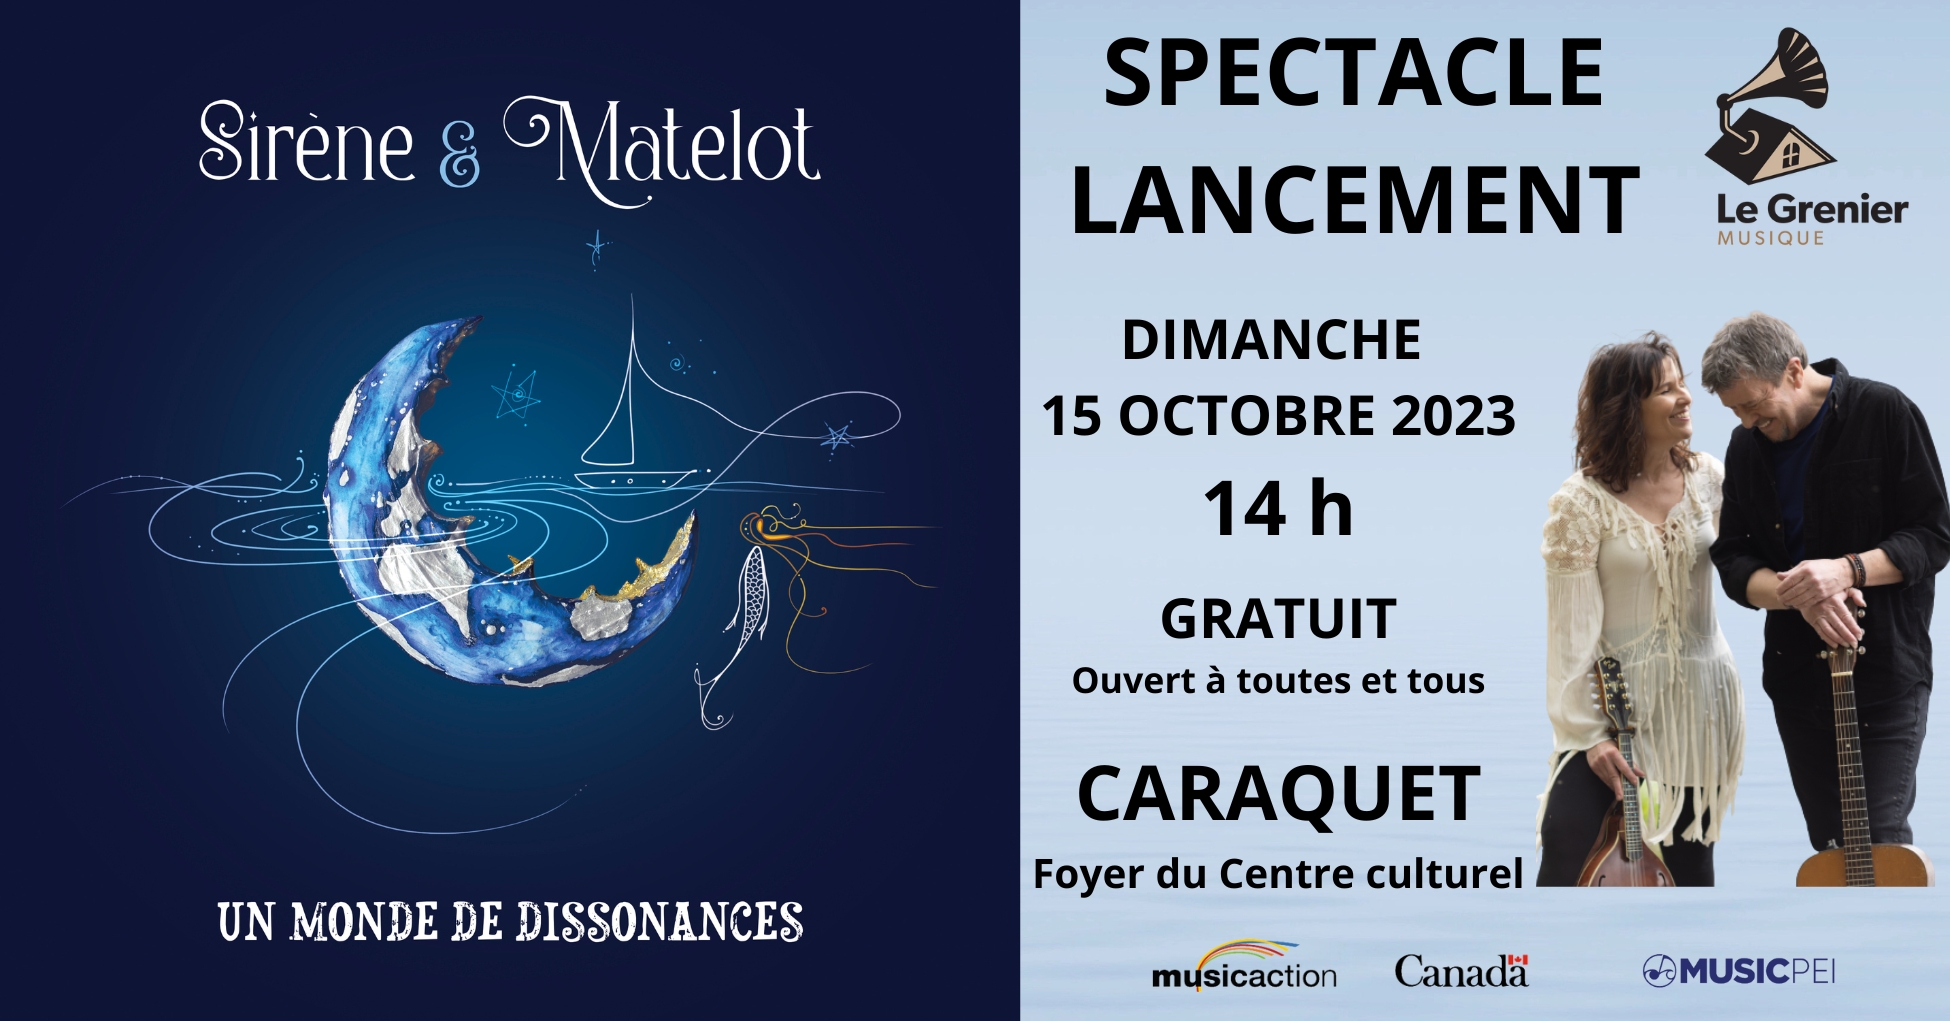 Lancement_Caraquet_-_Un_monde_de_dissonances.jpg